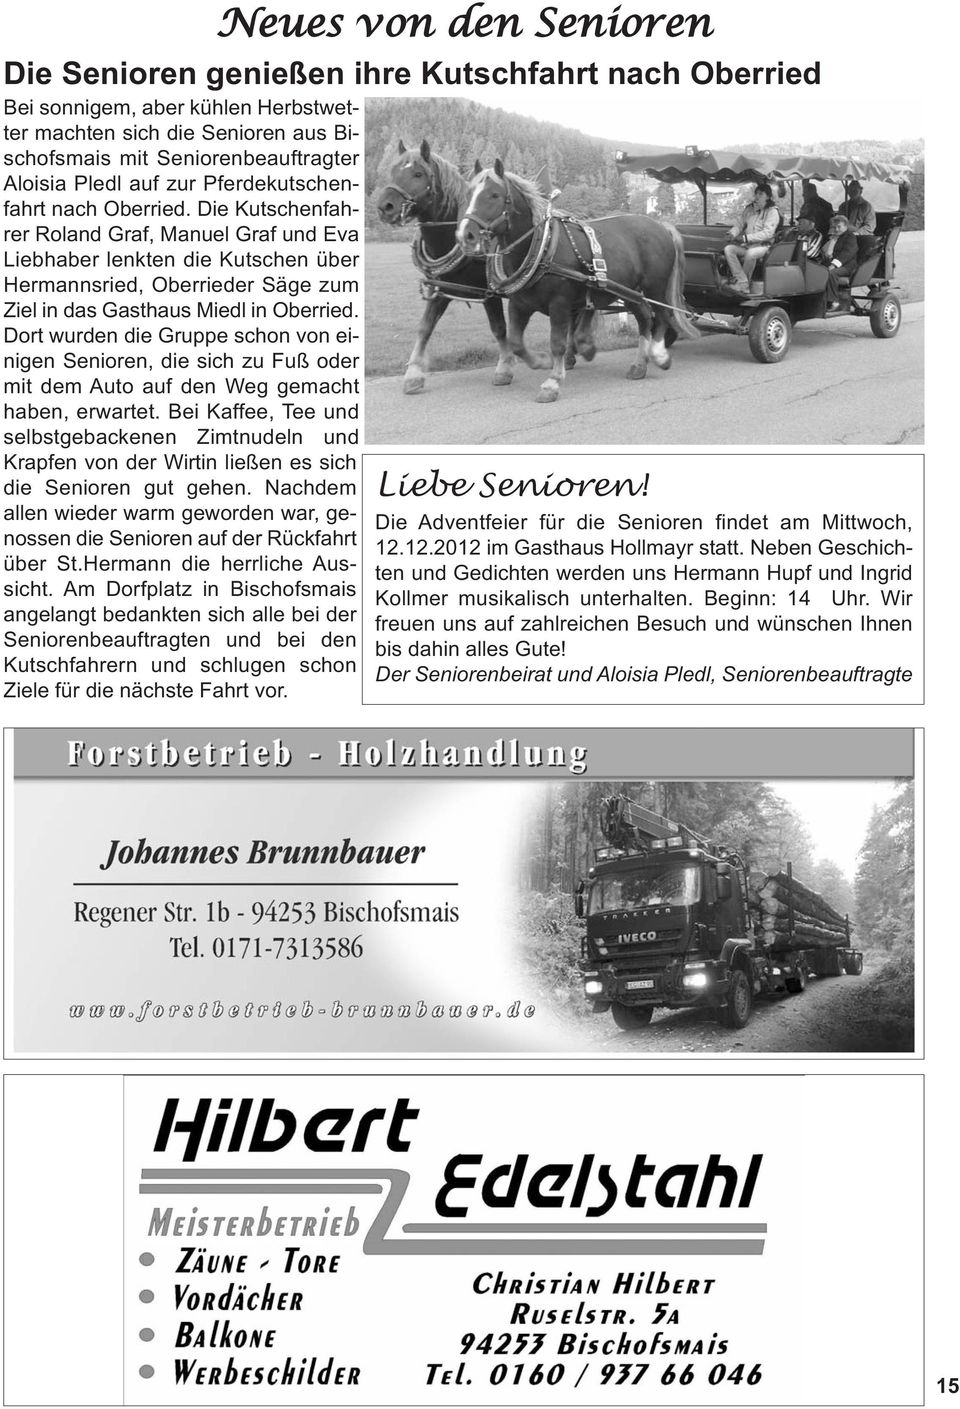 Die Kutschenfahrer Roland Graf, Manuel Graf und Eva Liebhaber lenkten die Kutschen über Hermannsried, Oberrieder Säge zum Ziel in das Gasthaus Miedl in Oberried.